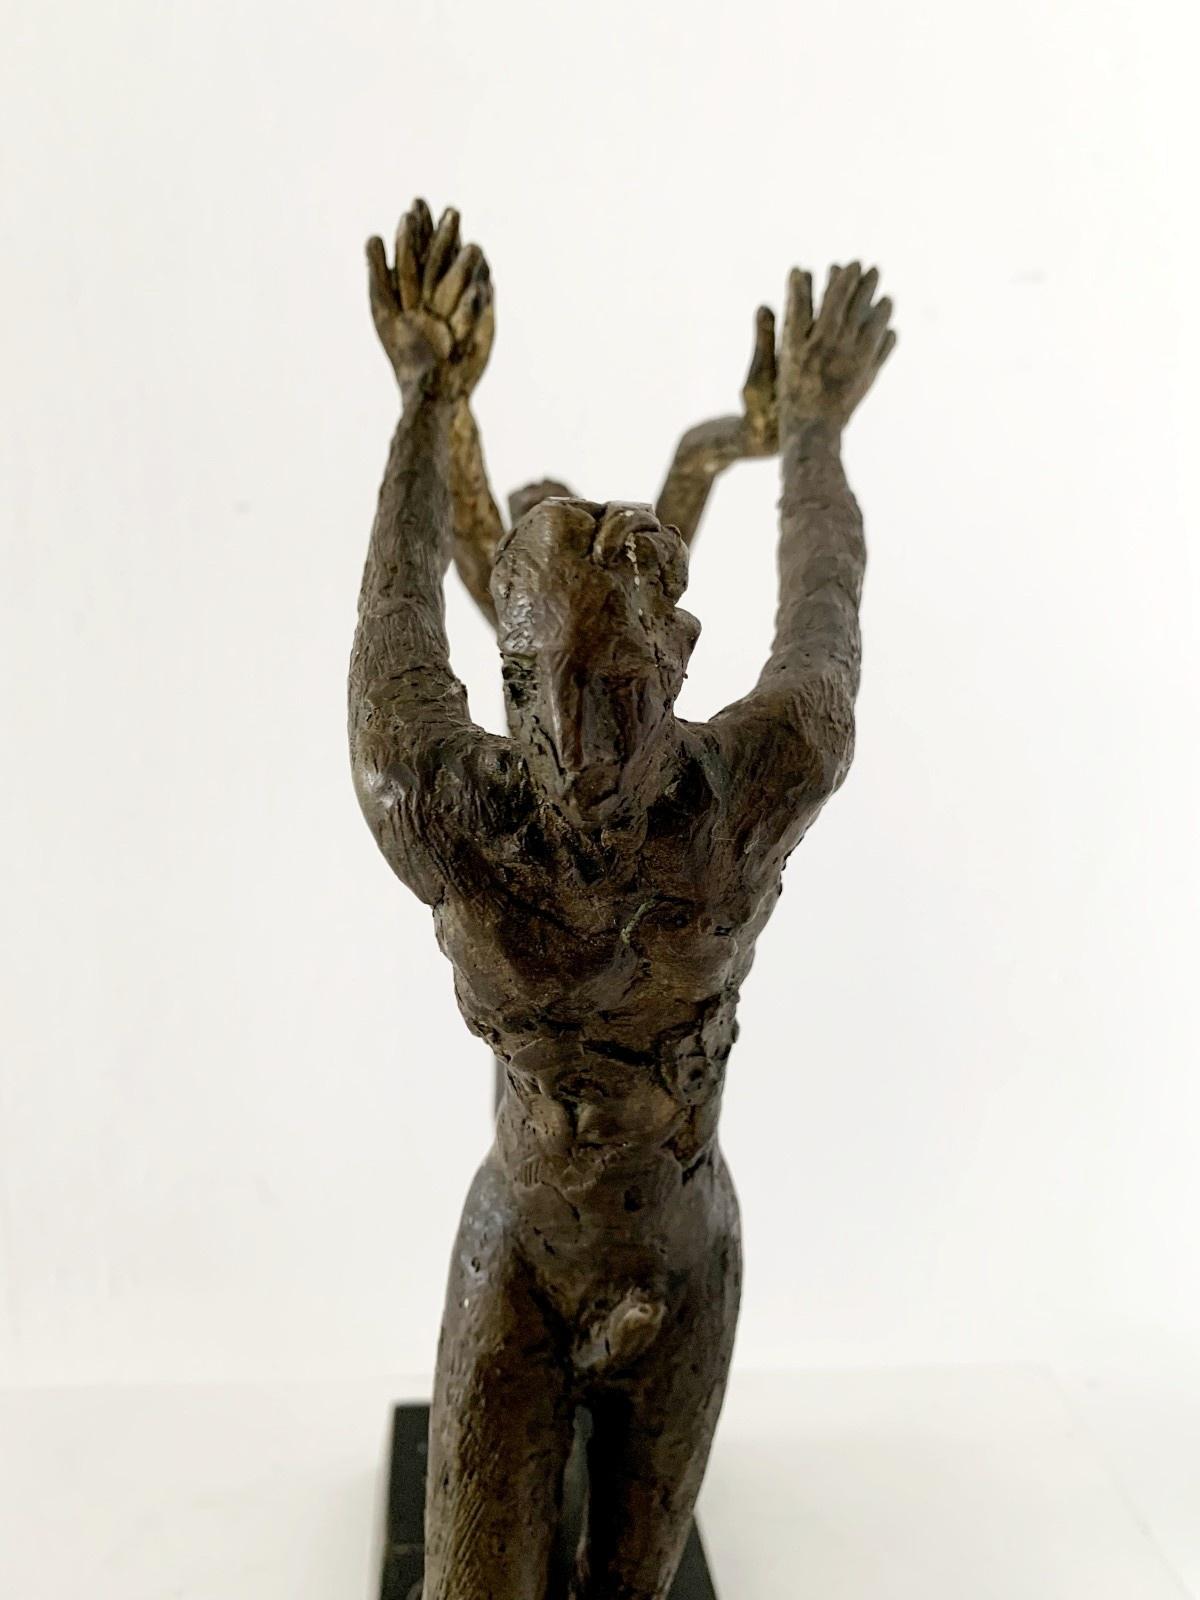 Zeitgenössische figurative Bronzeskulptur eines tanzenden Paares des italienischen Künstlers Professor Giuseppe del Debbio. Die Skulptur ist auf dem Sockel signiert. Das Paar besteht aus einem Mann und einer Frau, die sich in einer dynamischen, fast